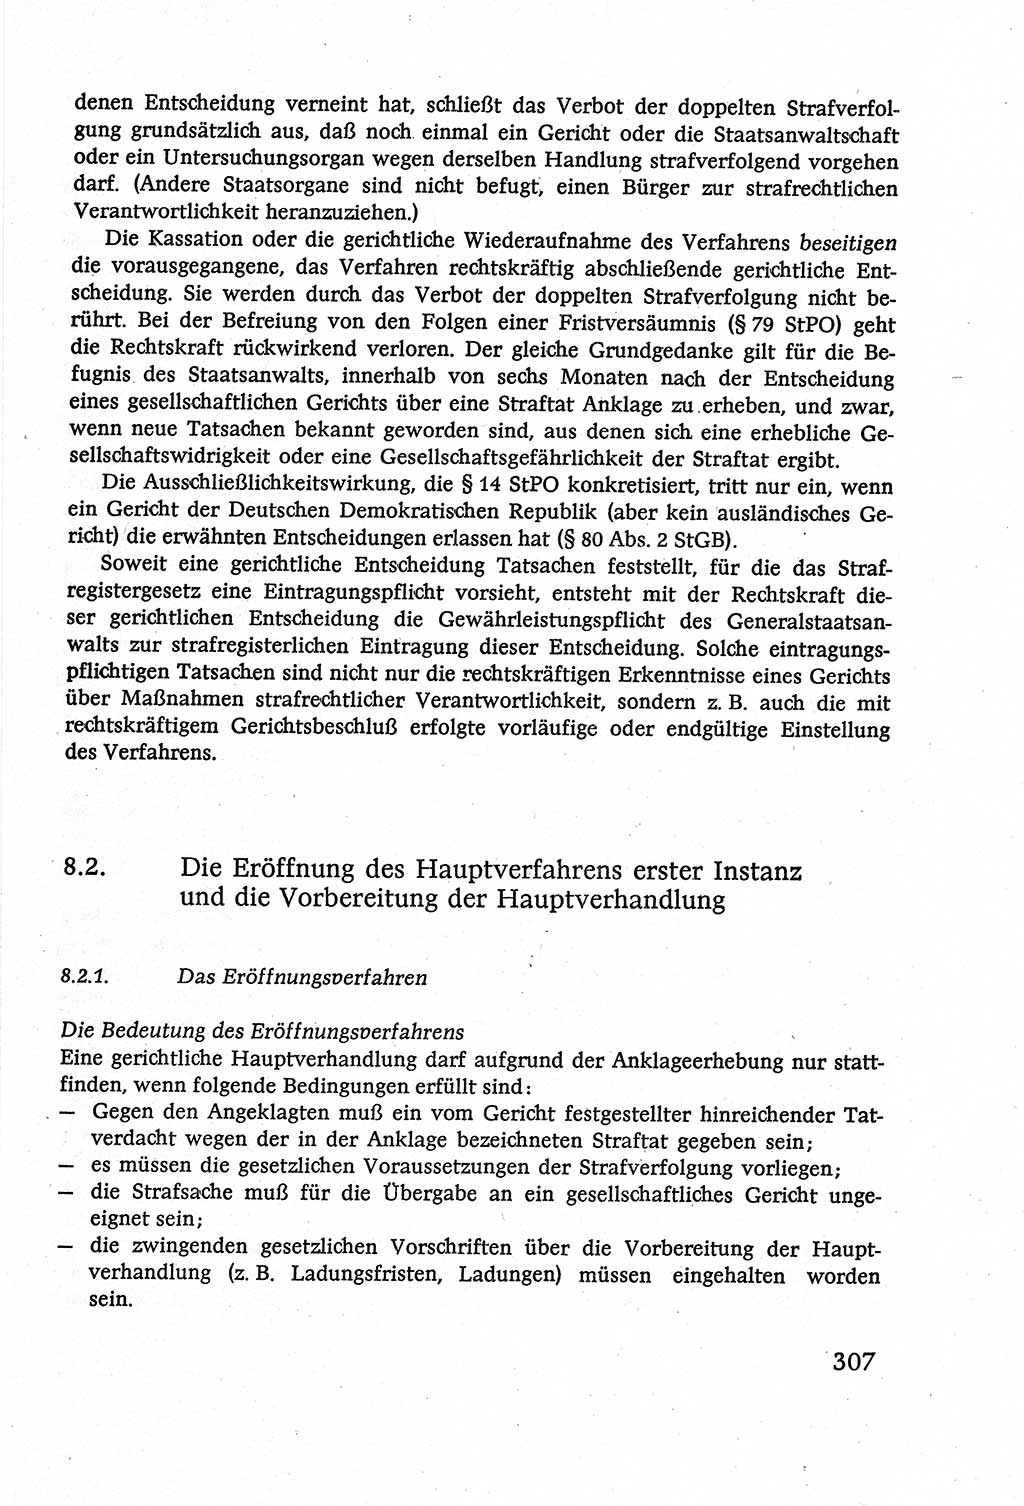 Strafverfahrensrecht [Deutsche Demokratische Republik (DDR)], Lehrbuch 1977, Seite 307 (Strafverf.-R. DDR Lb. 1977, S. 307)